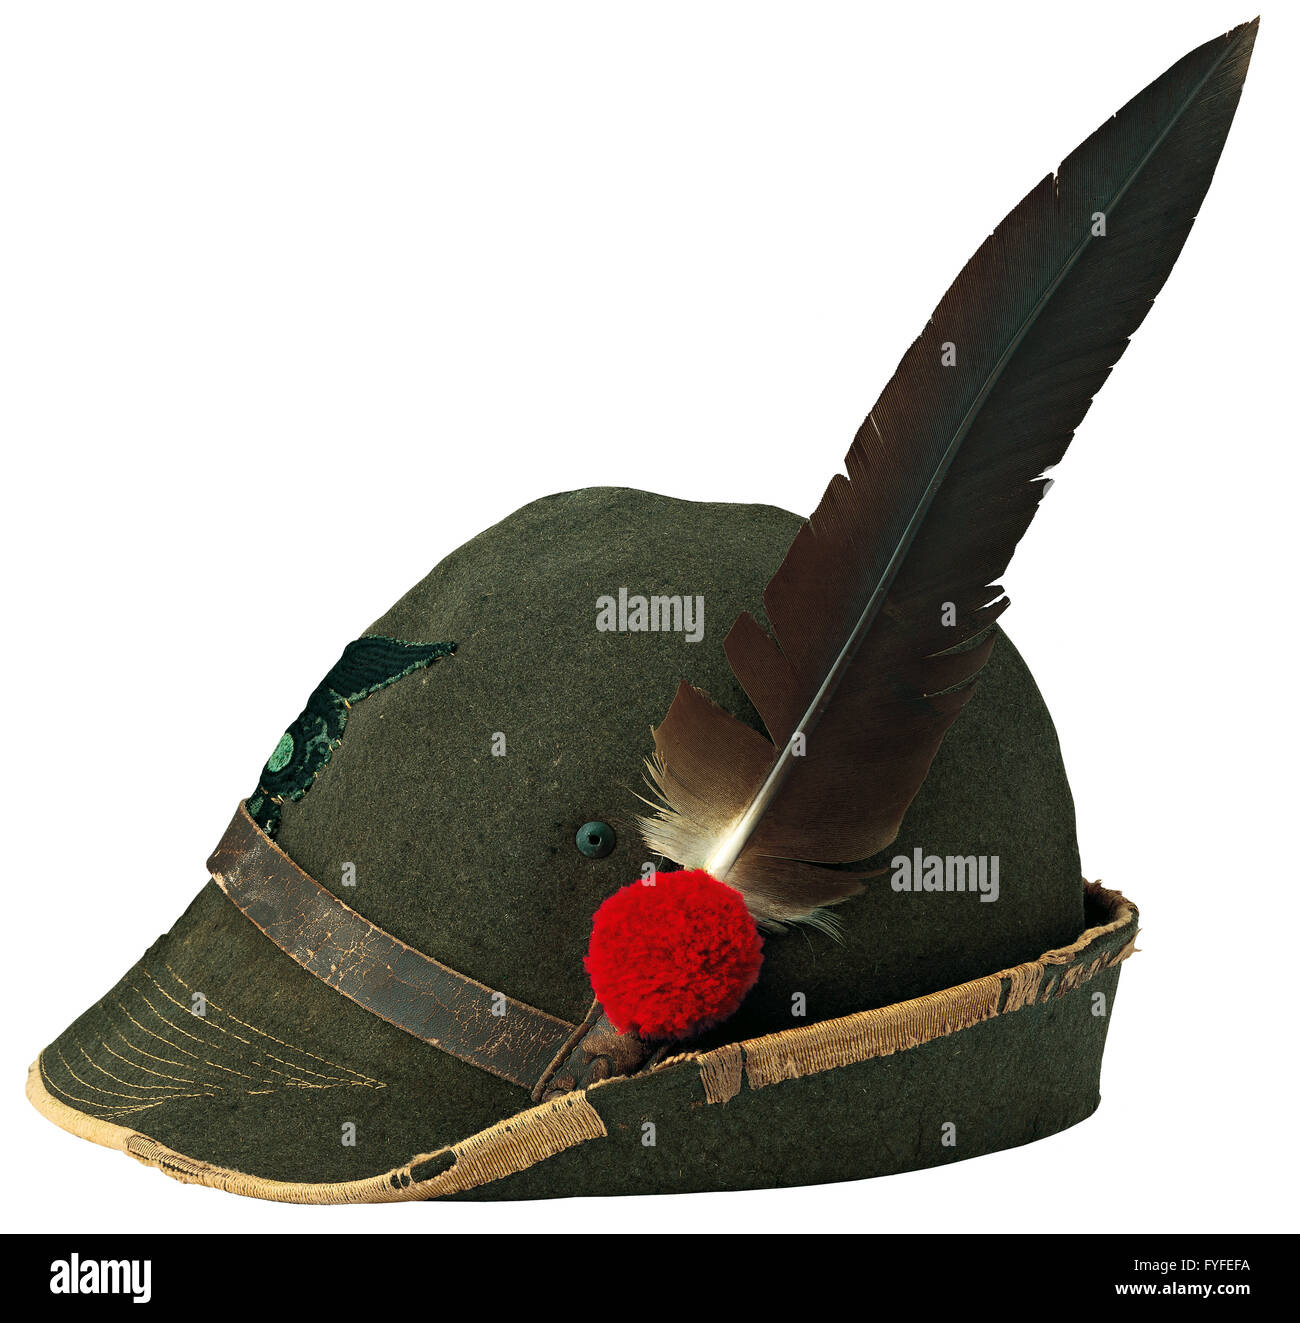 Cappello alpino immagini e fotografie stock ad alta risoluzione - Alamy